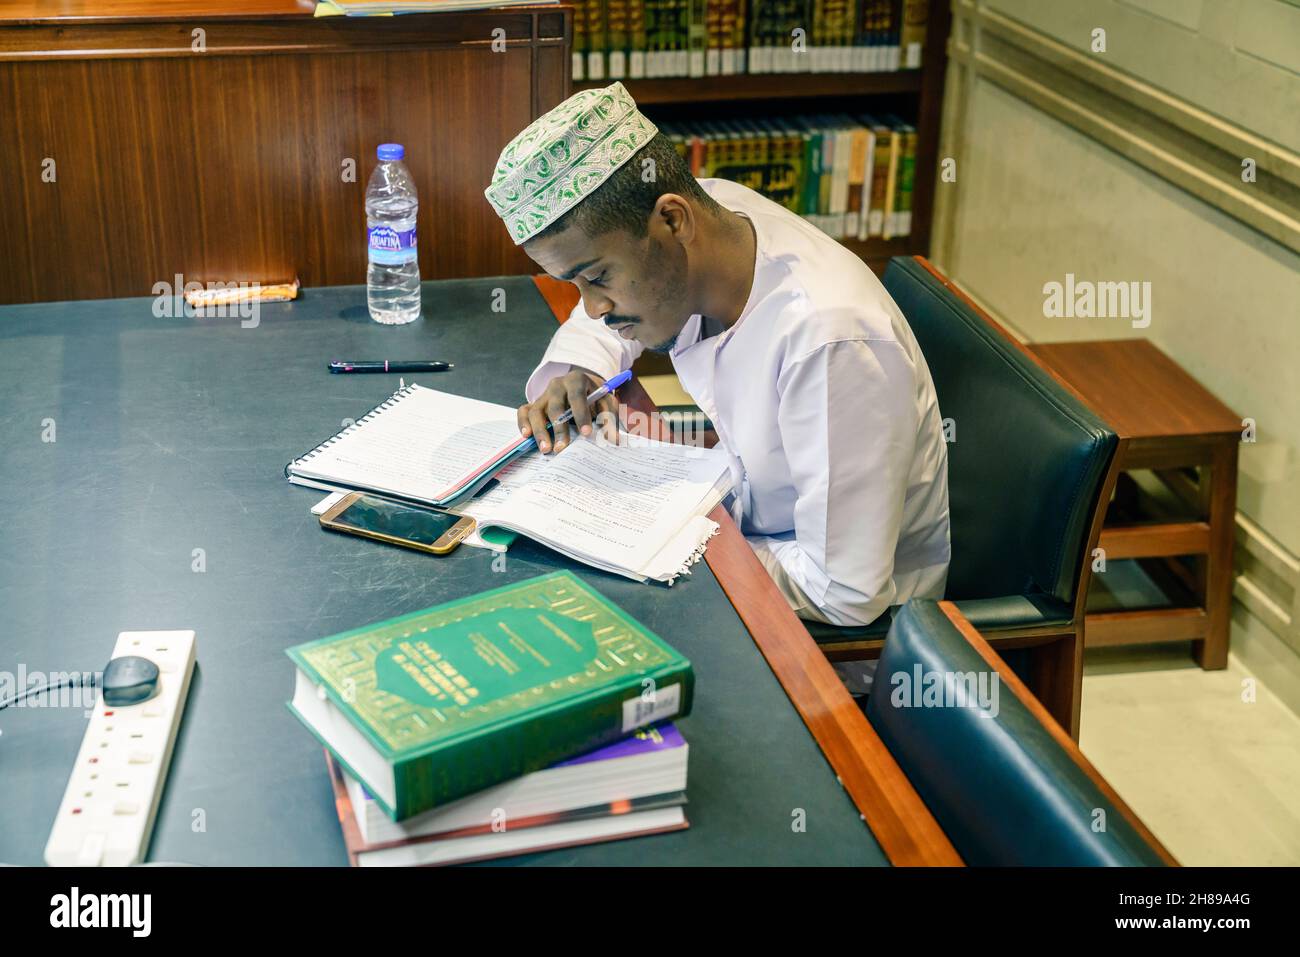 4 dicembre 2016, Muscat, Oman: Un giovane musulmano sta studiando alla biblioteca Muhammad al-Amin della moschea Foto Stock